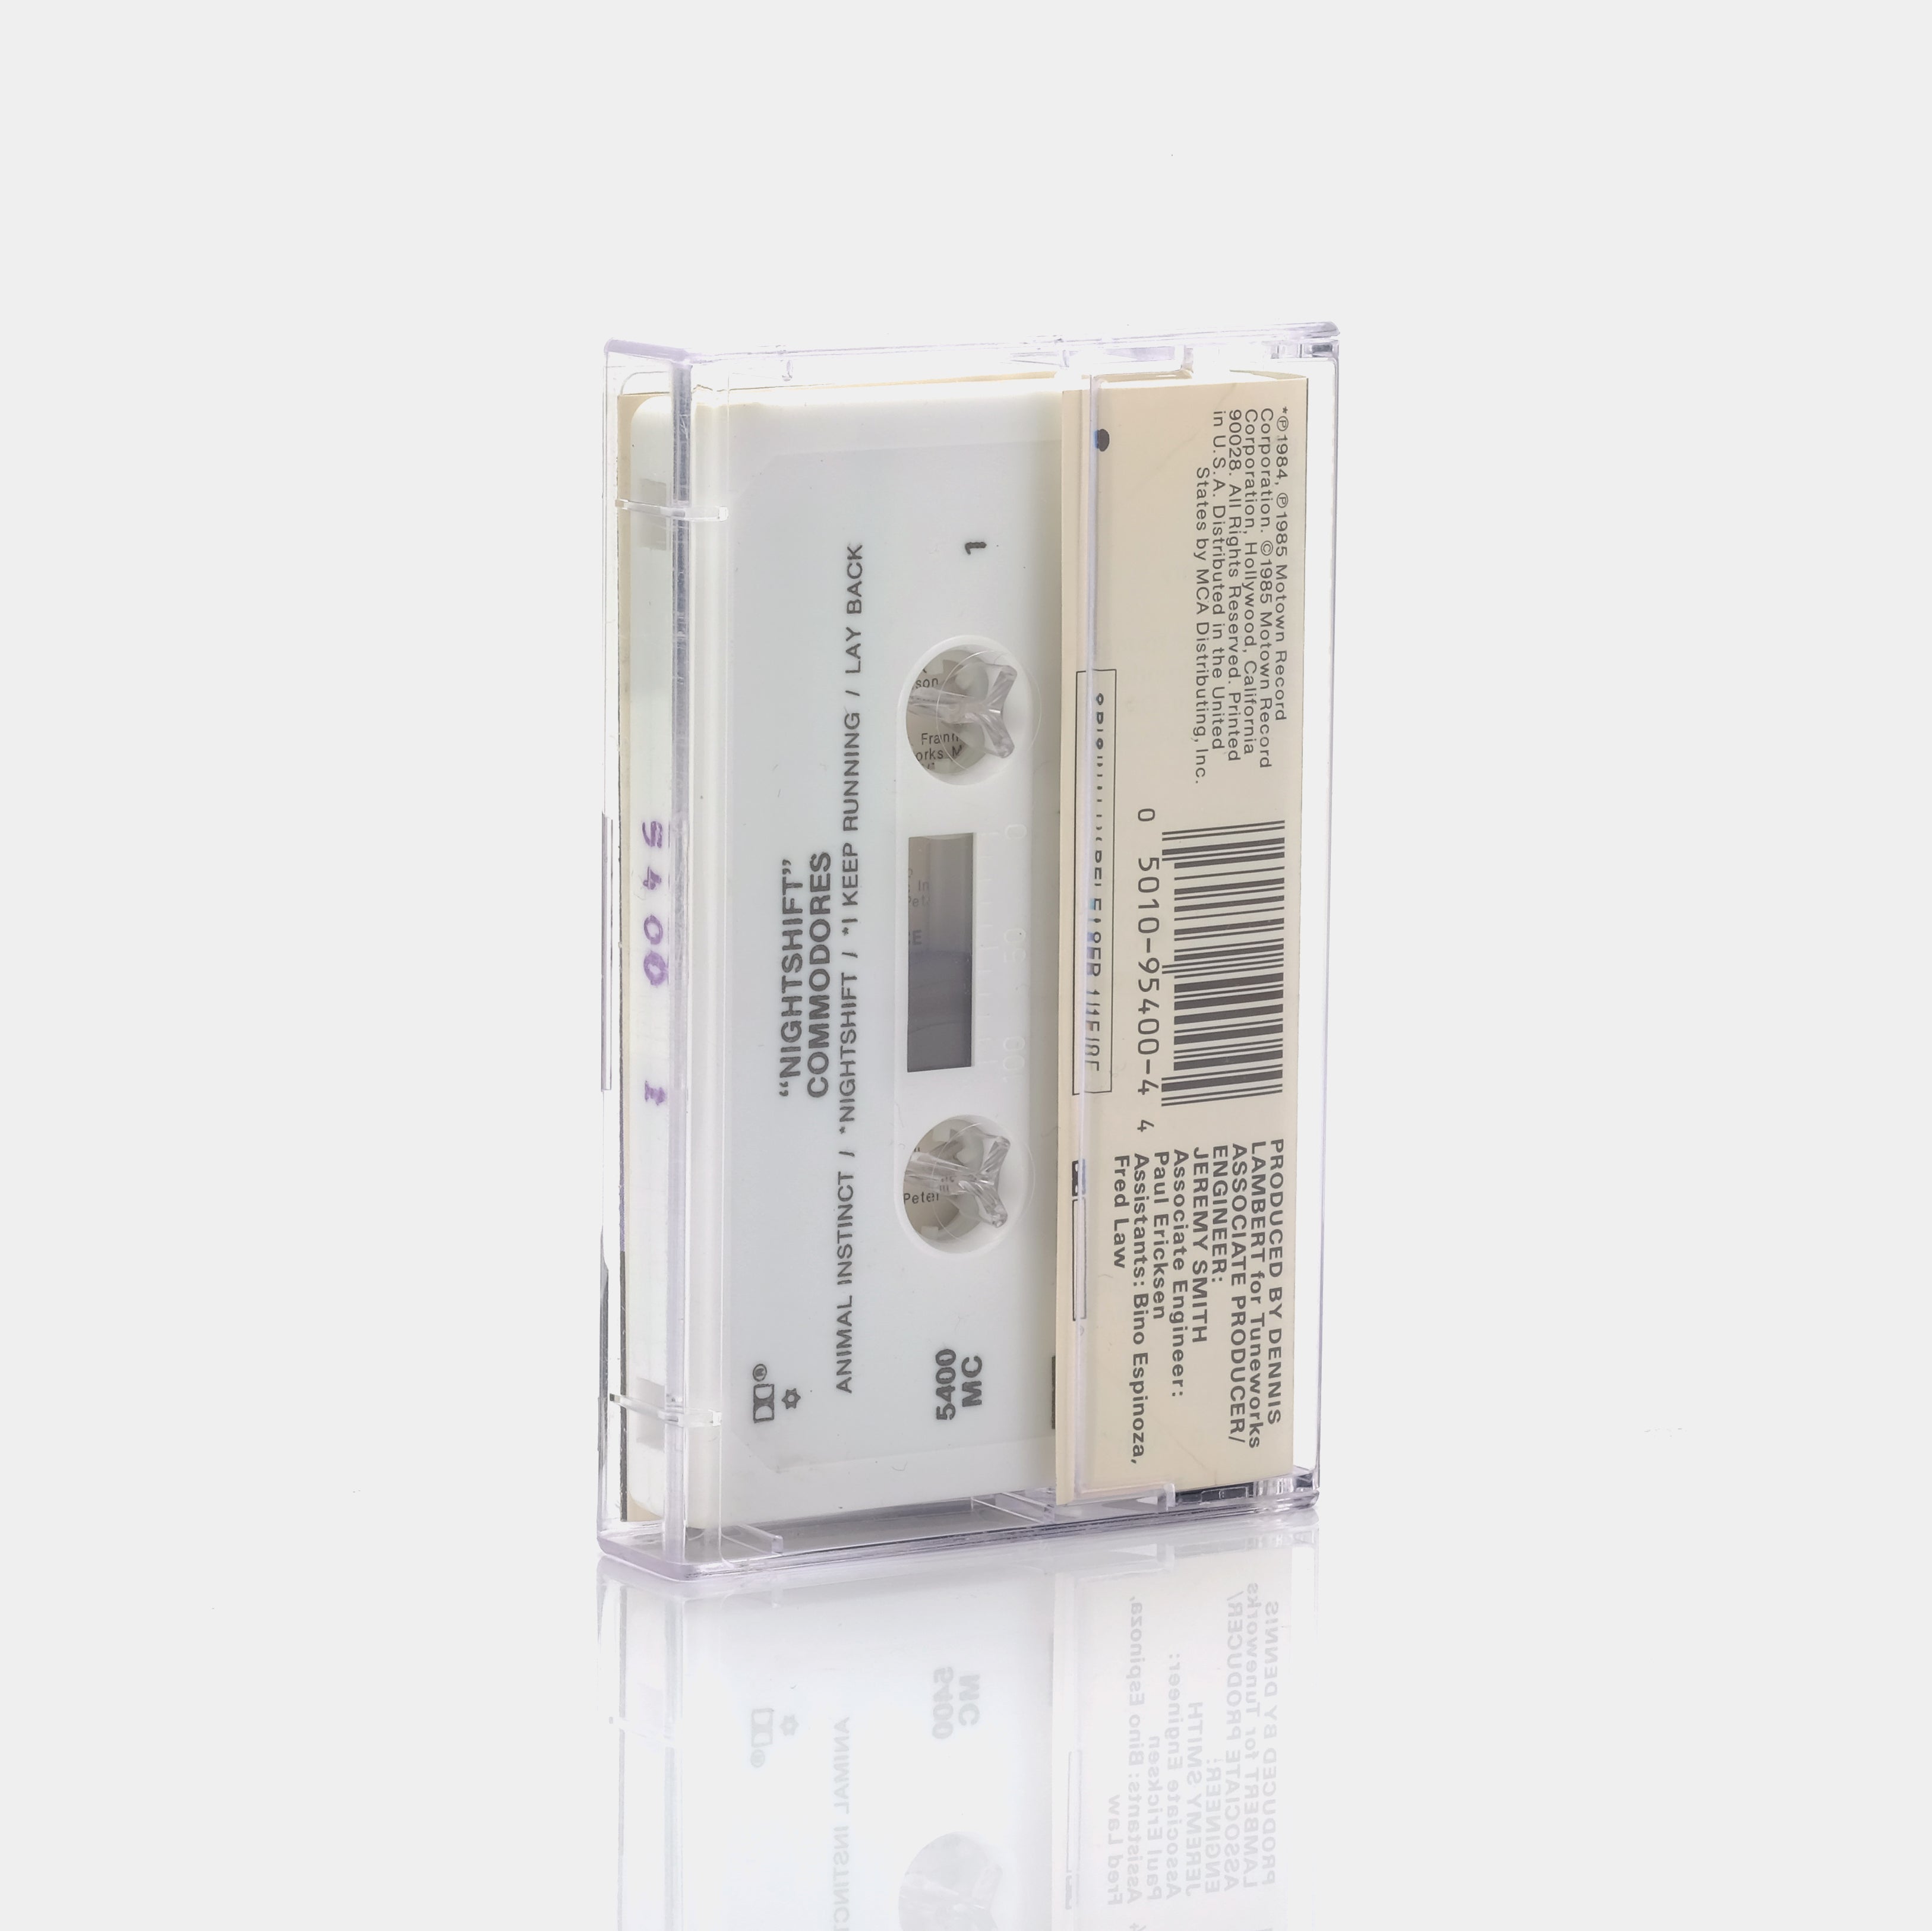 Commodores - Night Shift Cassette Tape